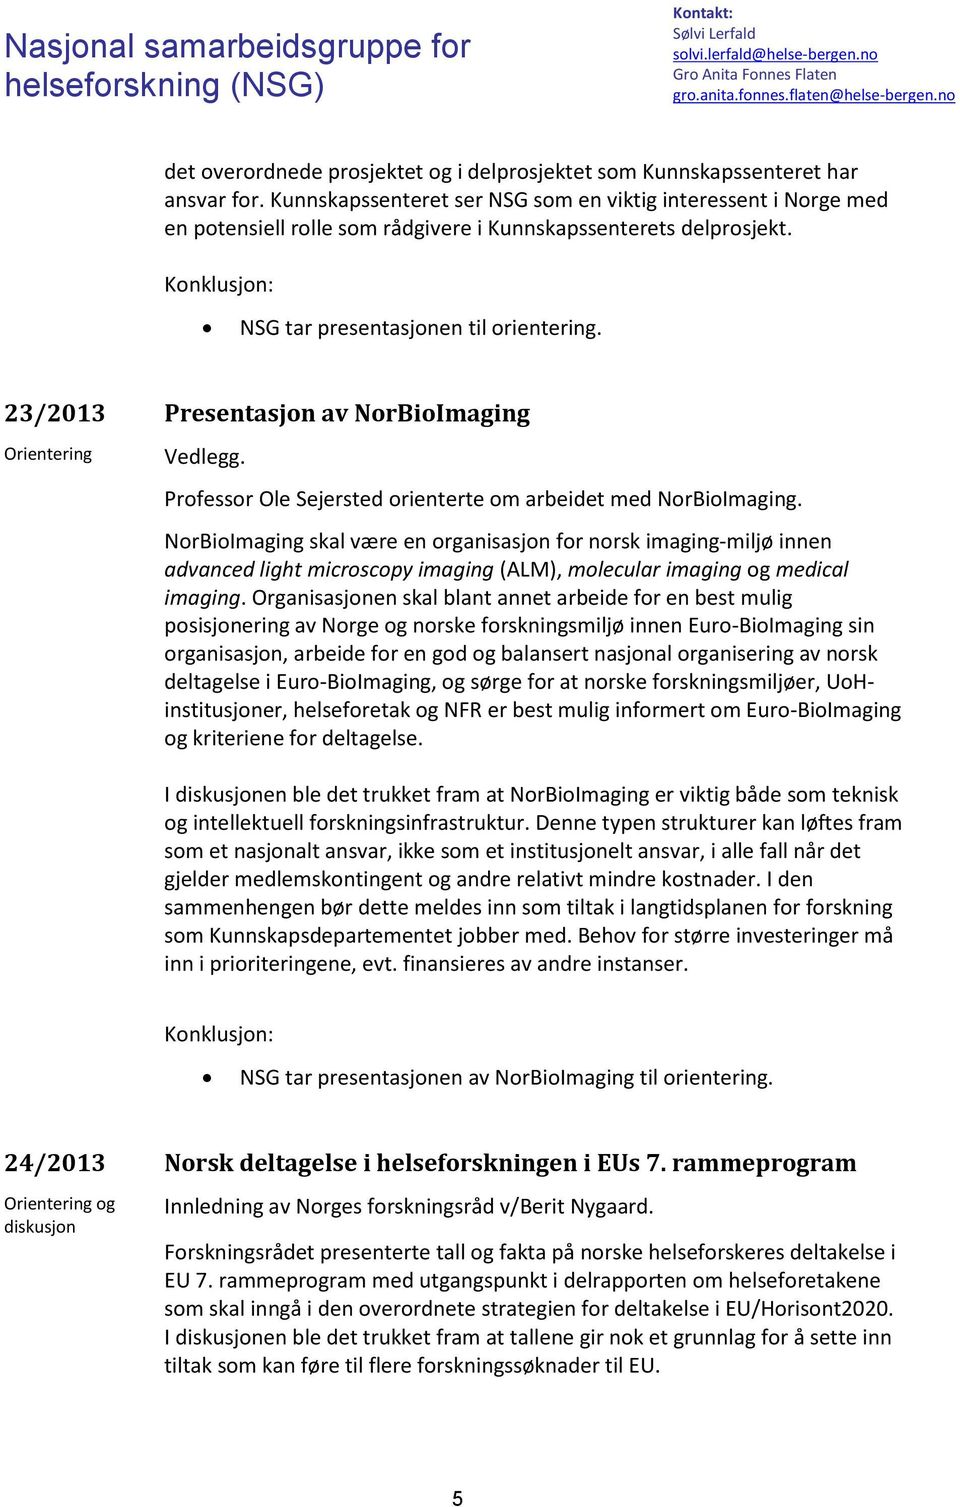 23/2013 Presentasjon av NorBioImaging Professor Ole Sejersted orienterte om arbeidet med NorBioImaging.